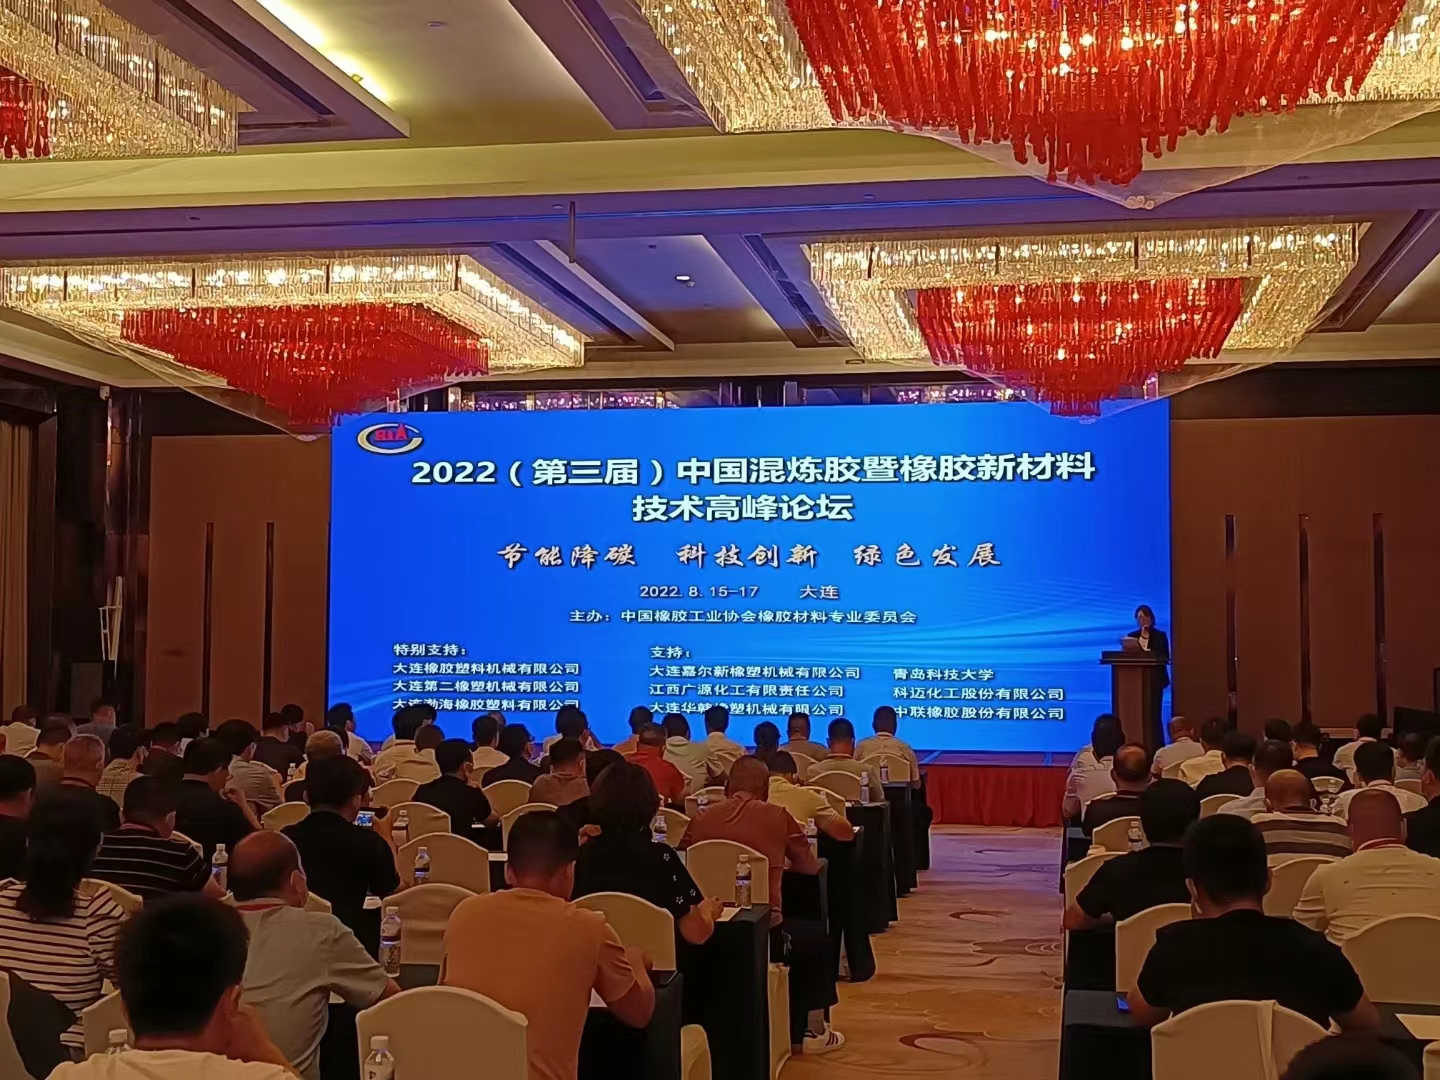 关于举办2022（第三届）中国混炼胶暨橡胶新材料